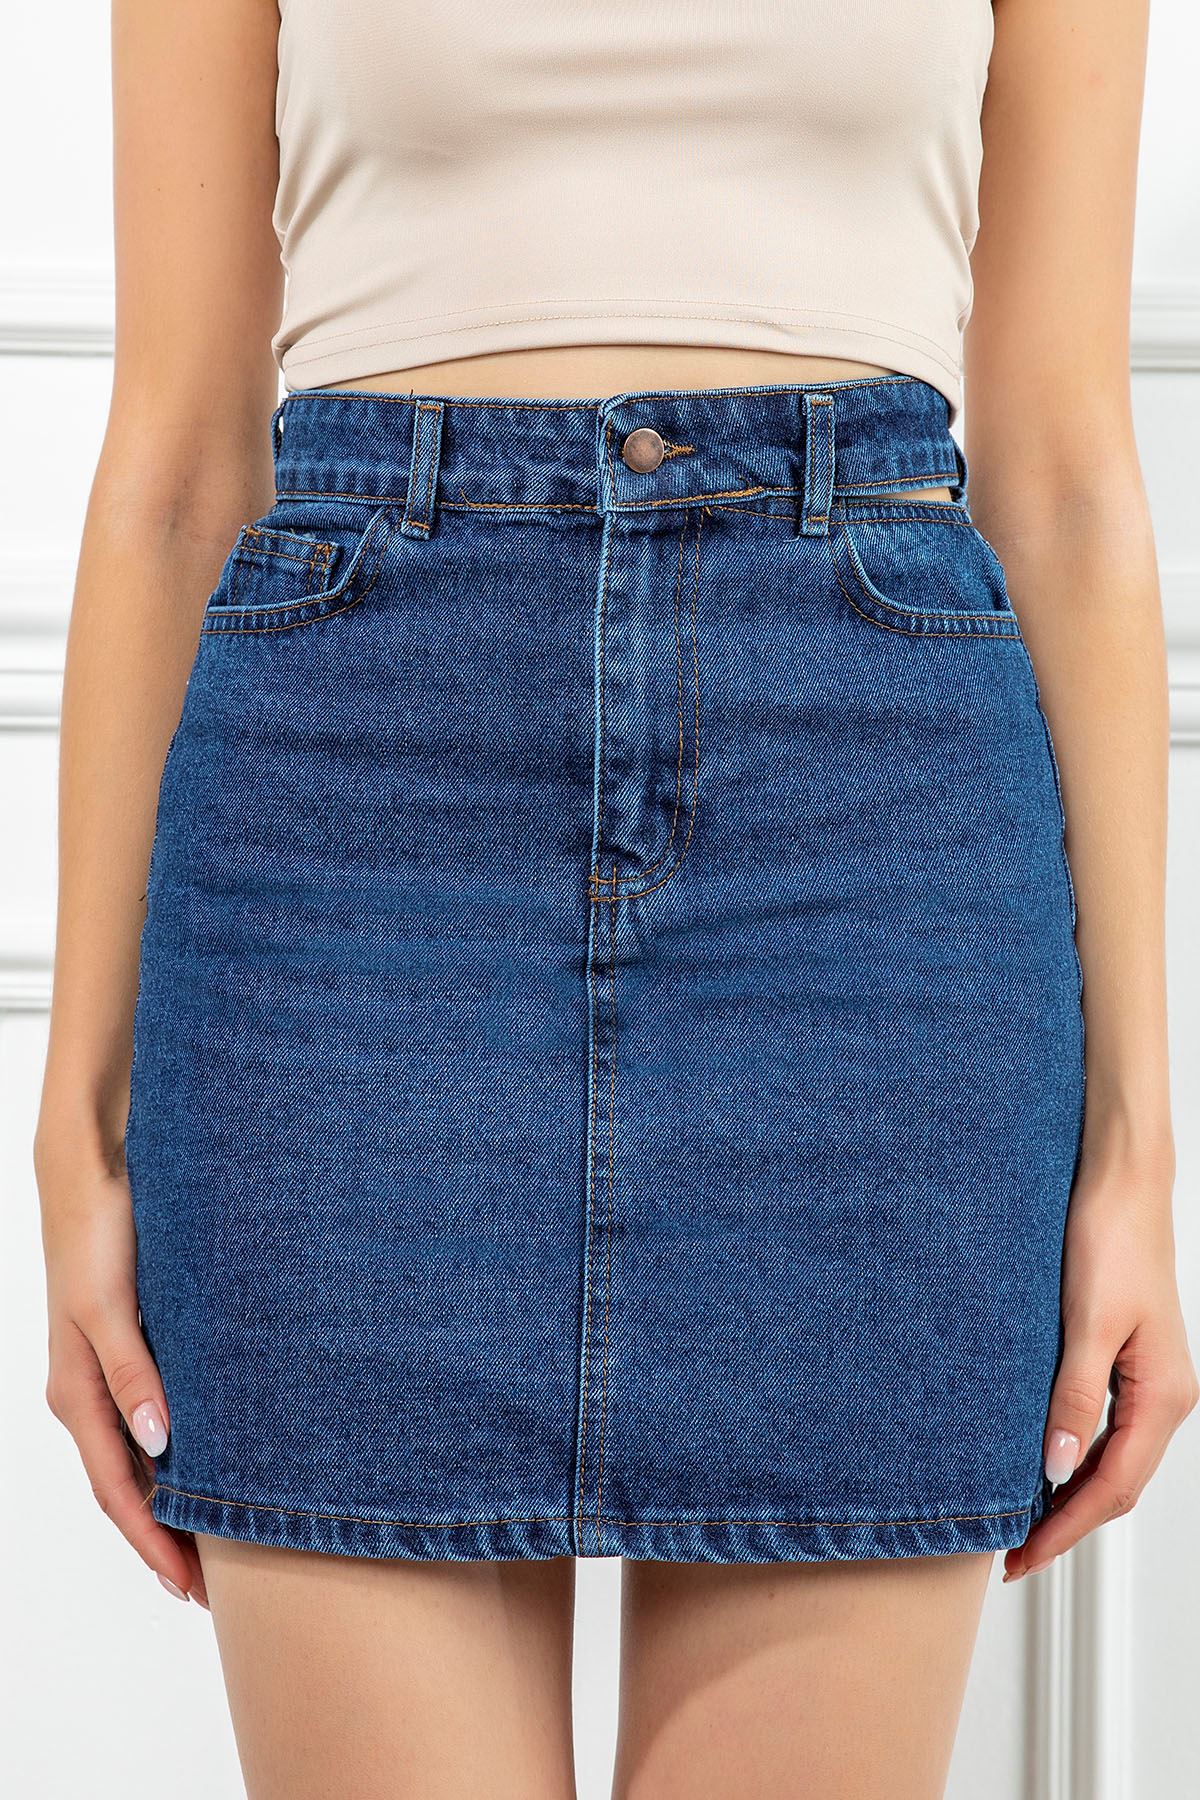 Denim Fabric Tight Fit Mini Skirt - Navy Blue 